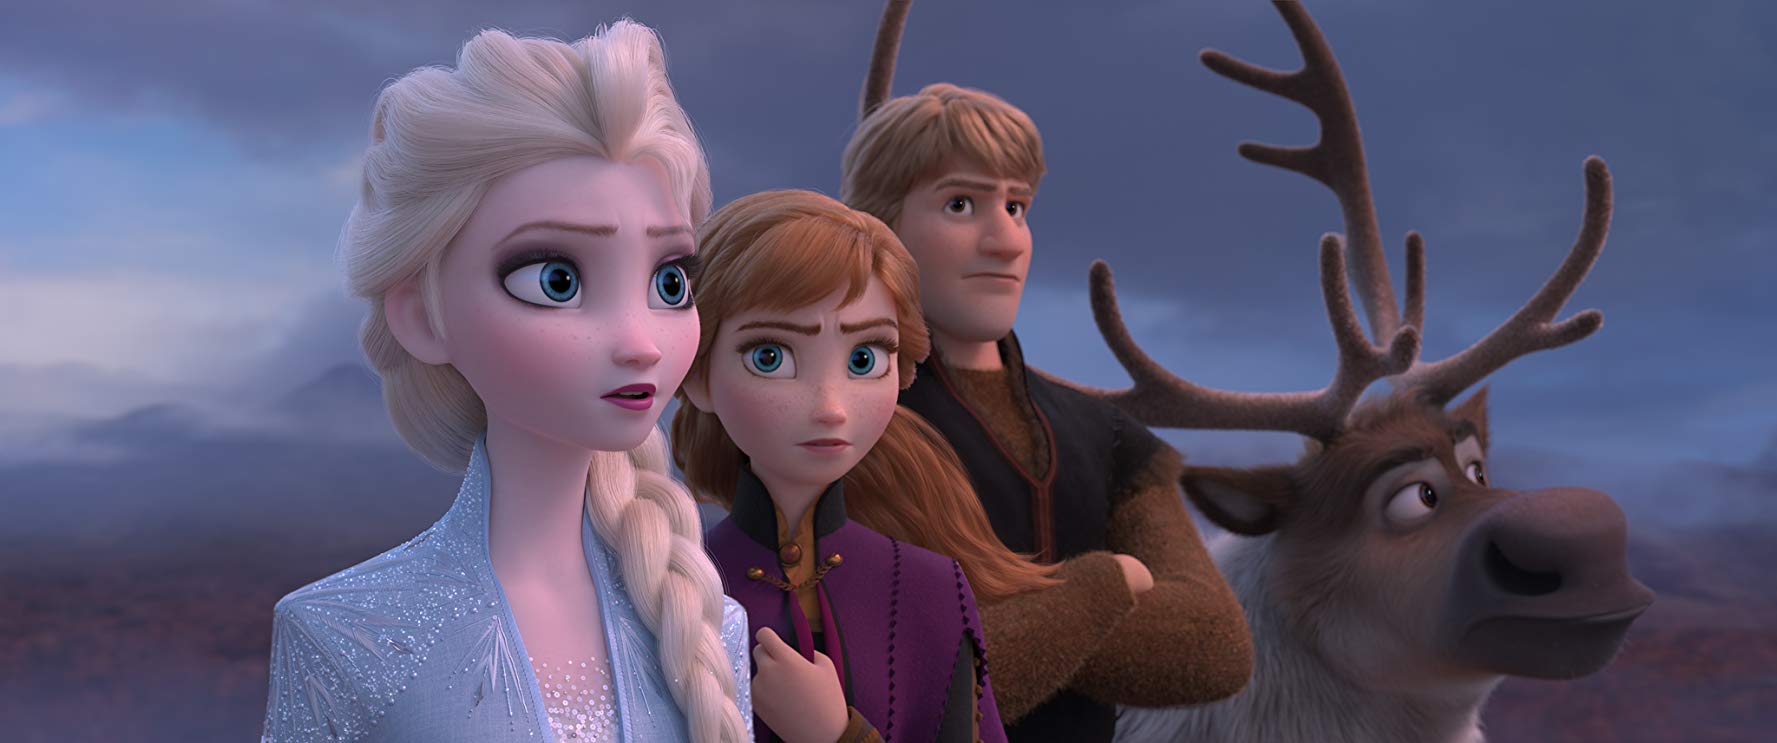 ‘Frozen 2’ Updates Disney Staple